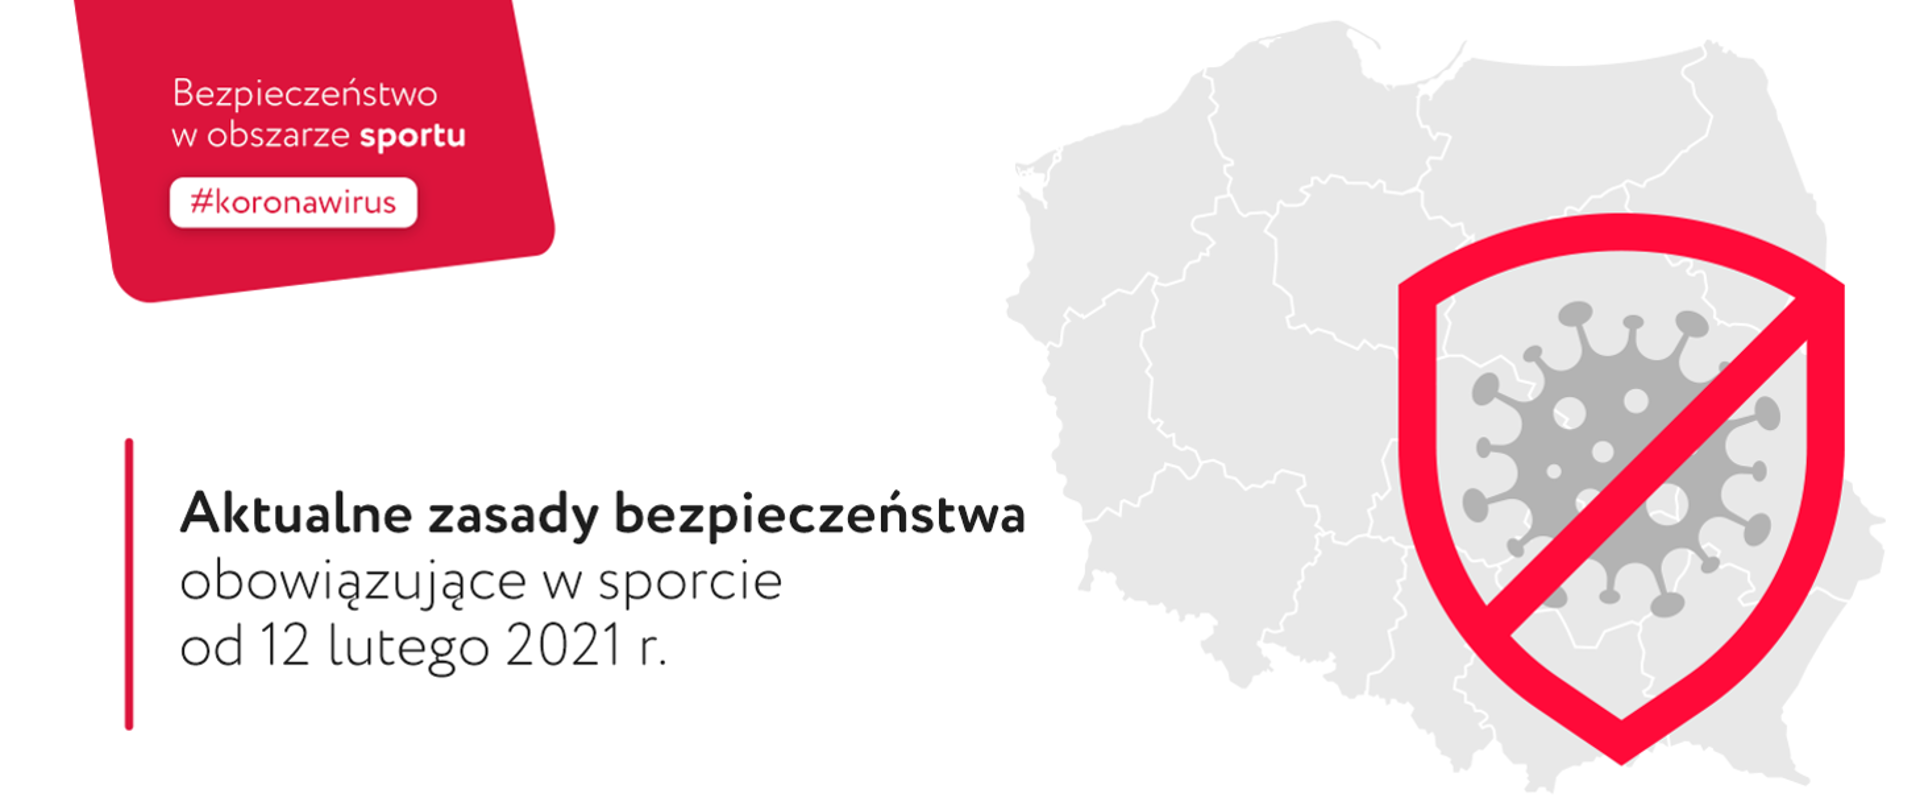 w lewym górnym rogu napis o treści " bezpieczeństwo w obszarze sportu #koronawirus", z prawej strony mapa Polski a na niej przekreślony symbol wirusa, na pierwszym planie napis o treści " aktualne zasady bezpieczeństwa obowiązujące w sporcie od 12 lutego 2021r."